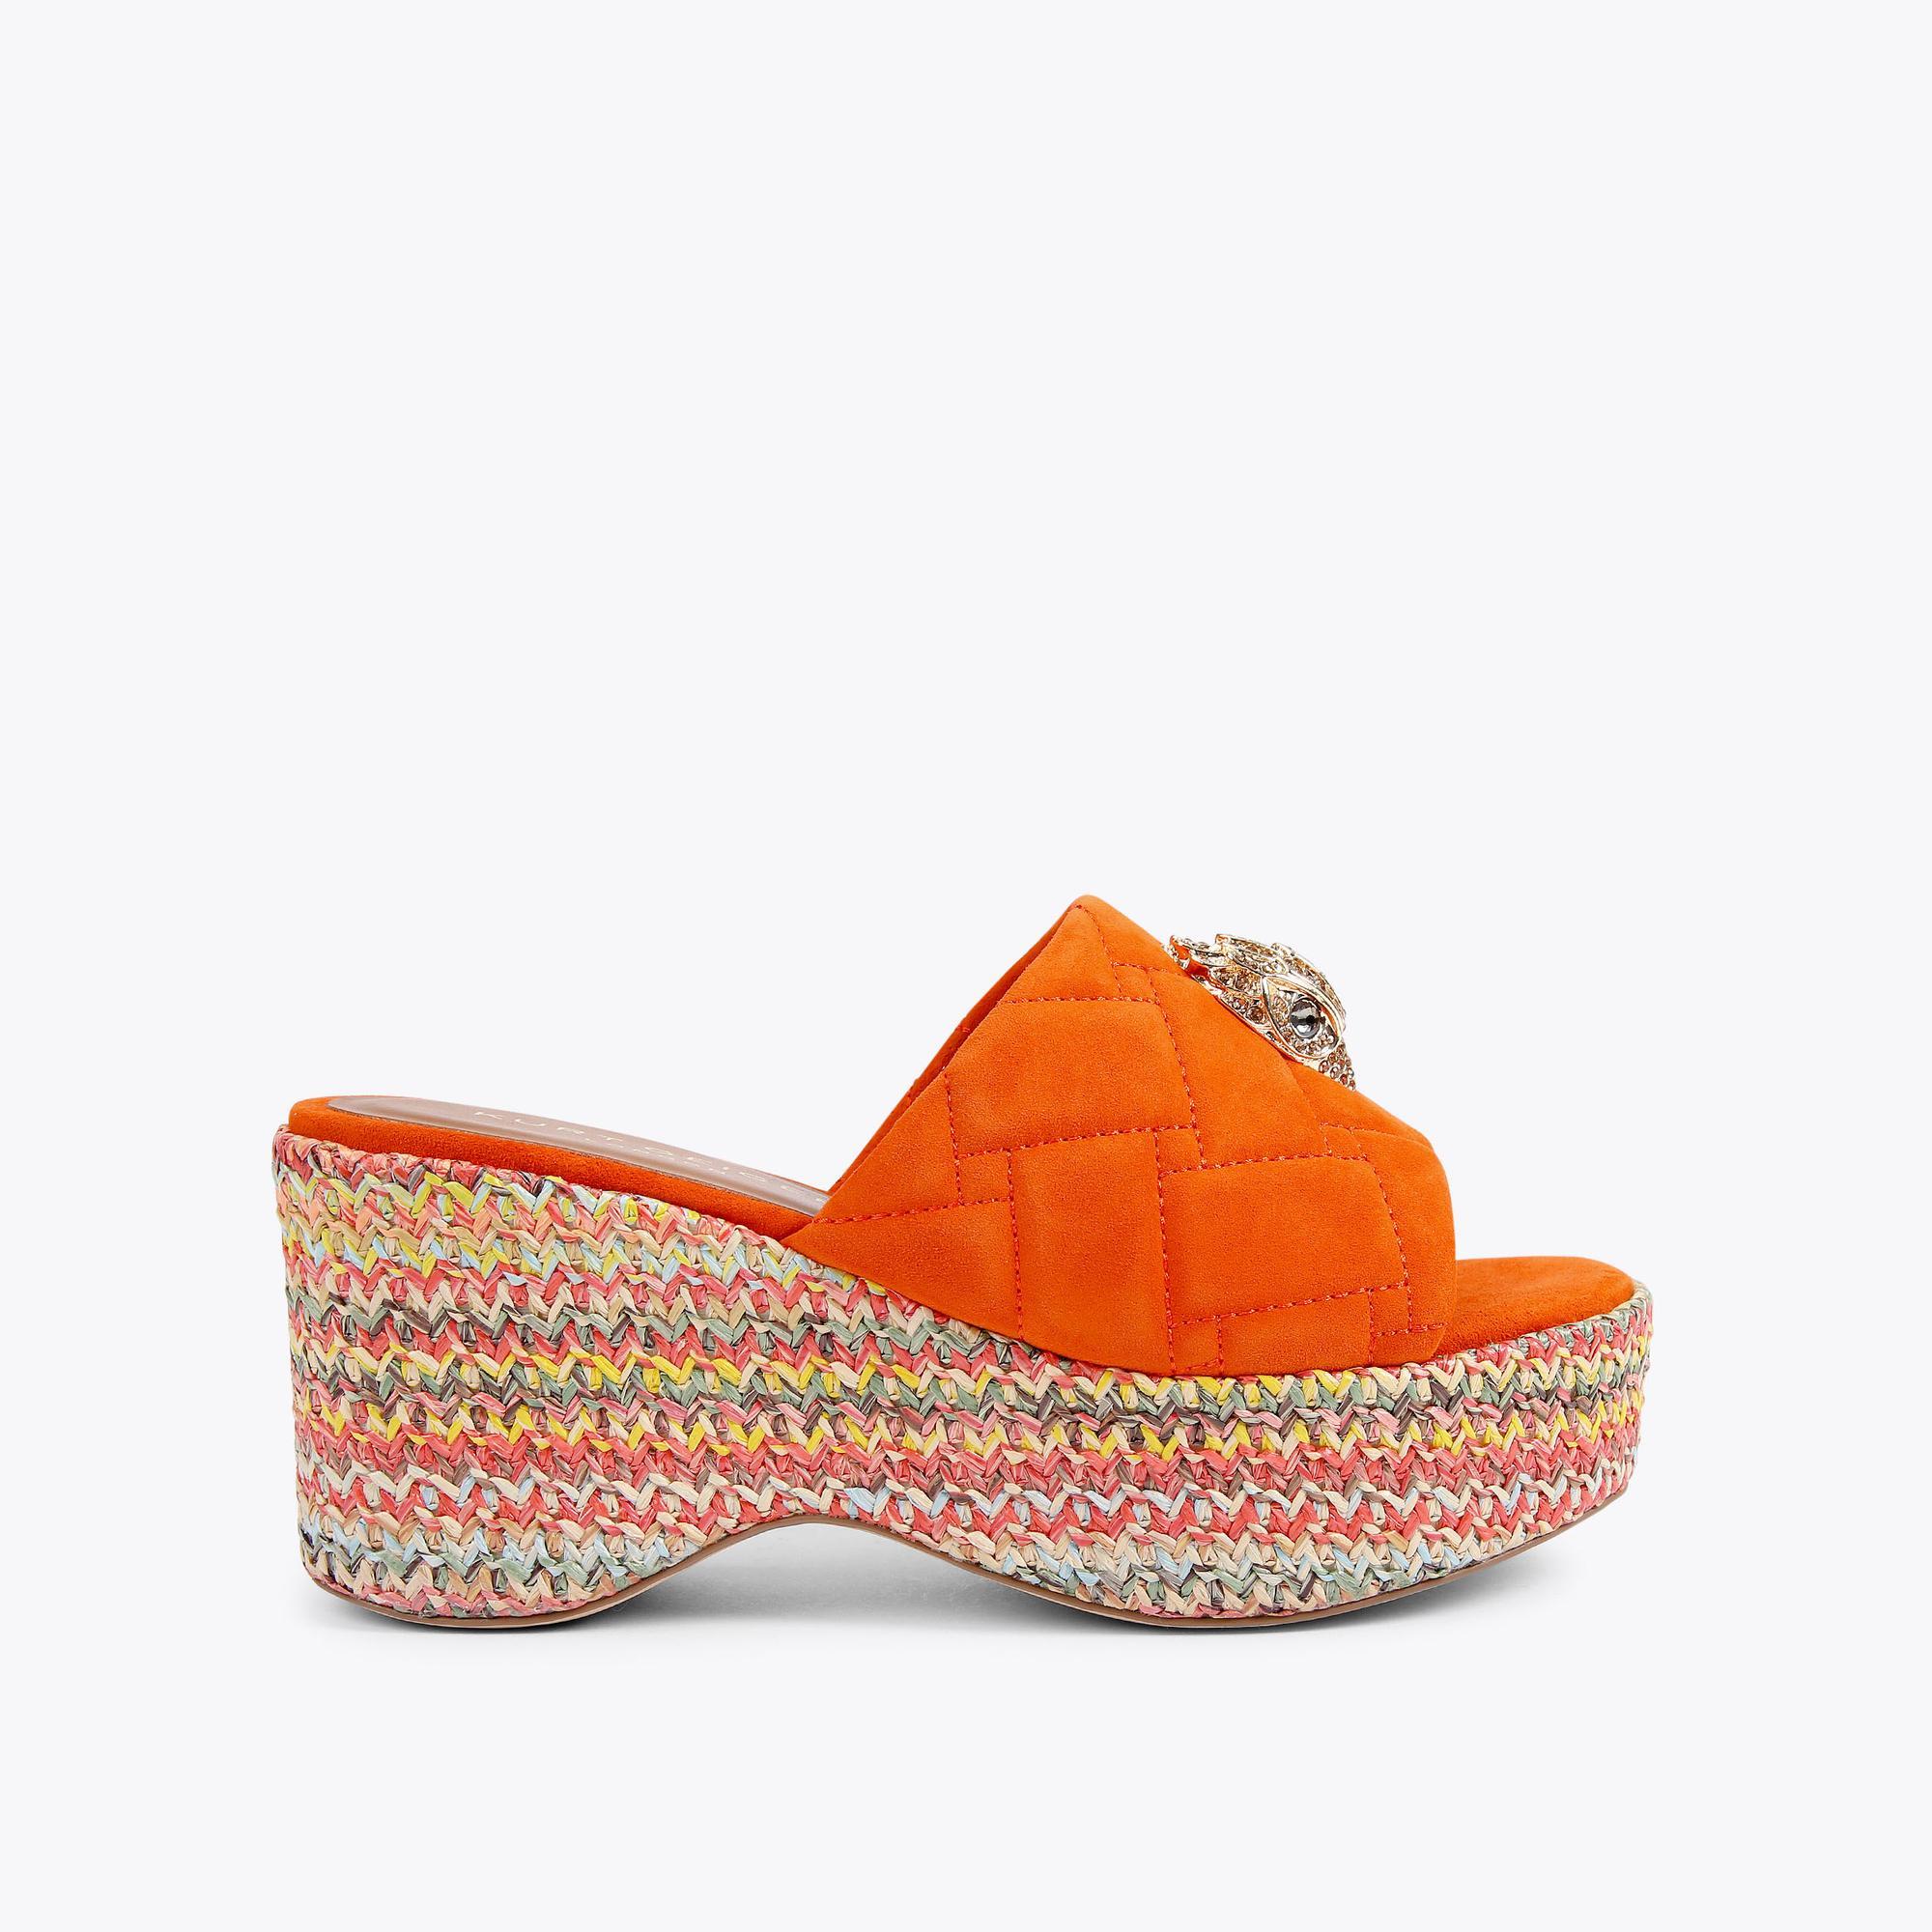 KENSINGTON WEDGE MULE Orange Suede Raffia Flatform Wedge Sandals by ...